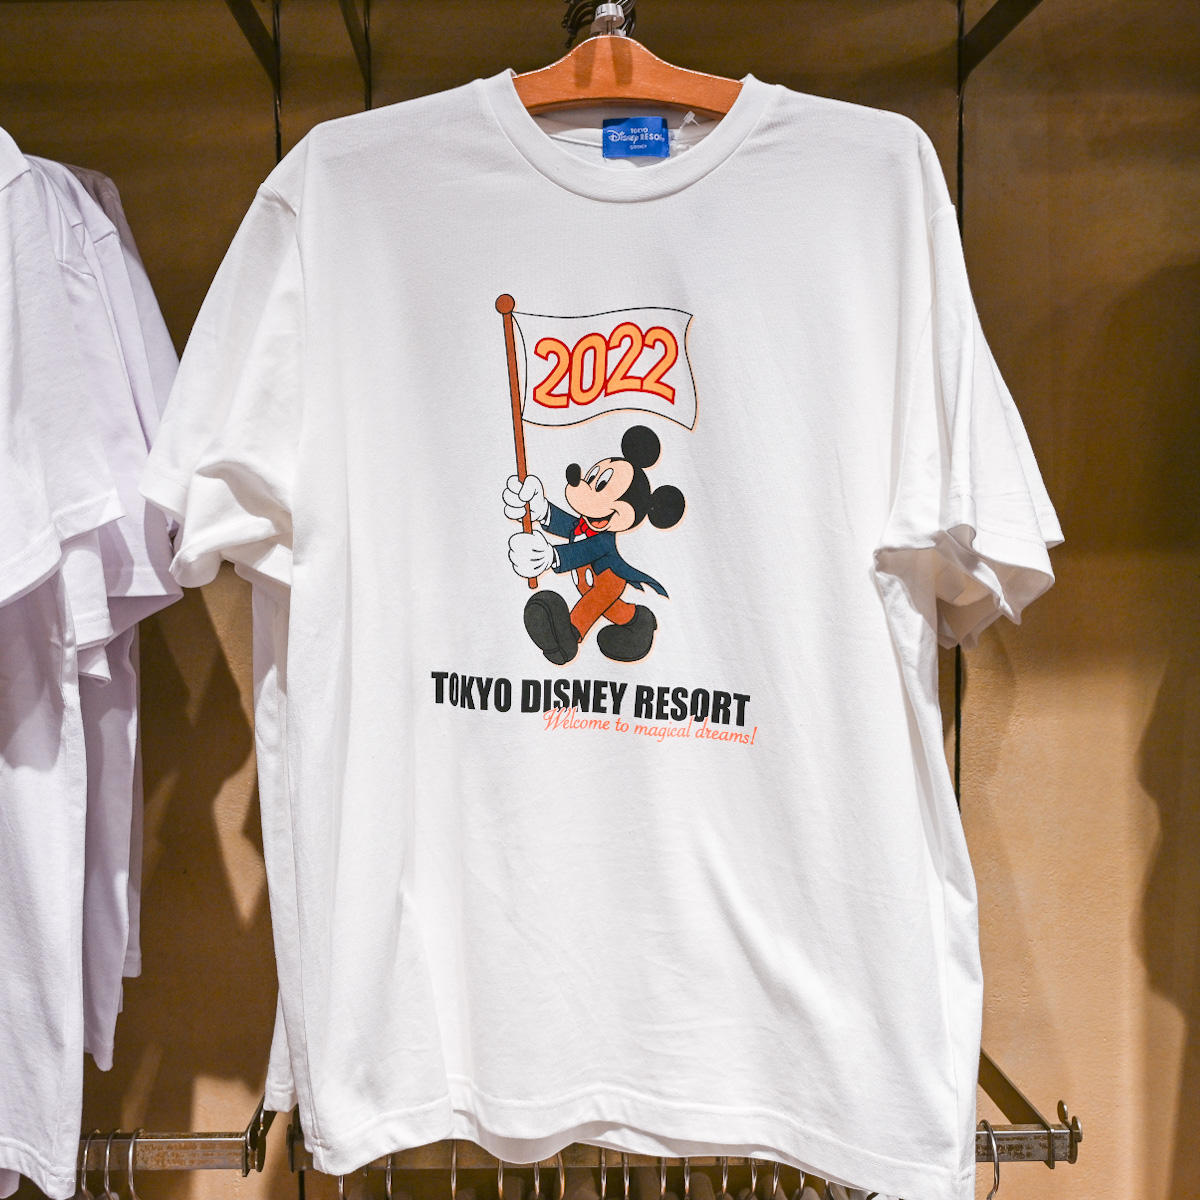  東京ディズニーランド「ミッキーマウス」2022Tシャツ